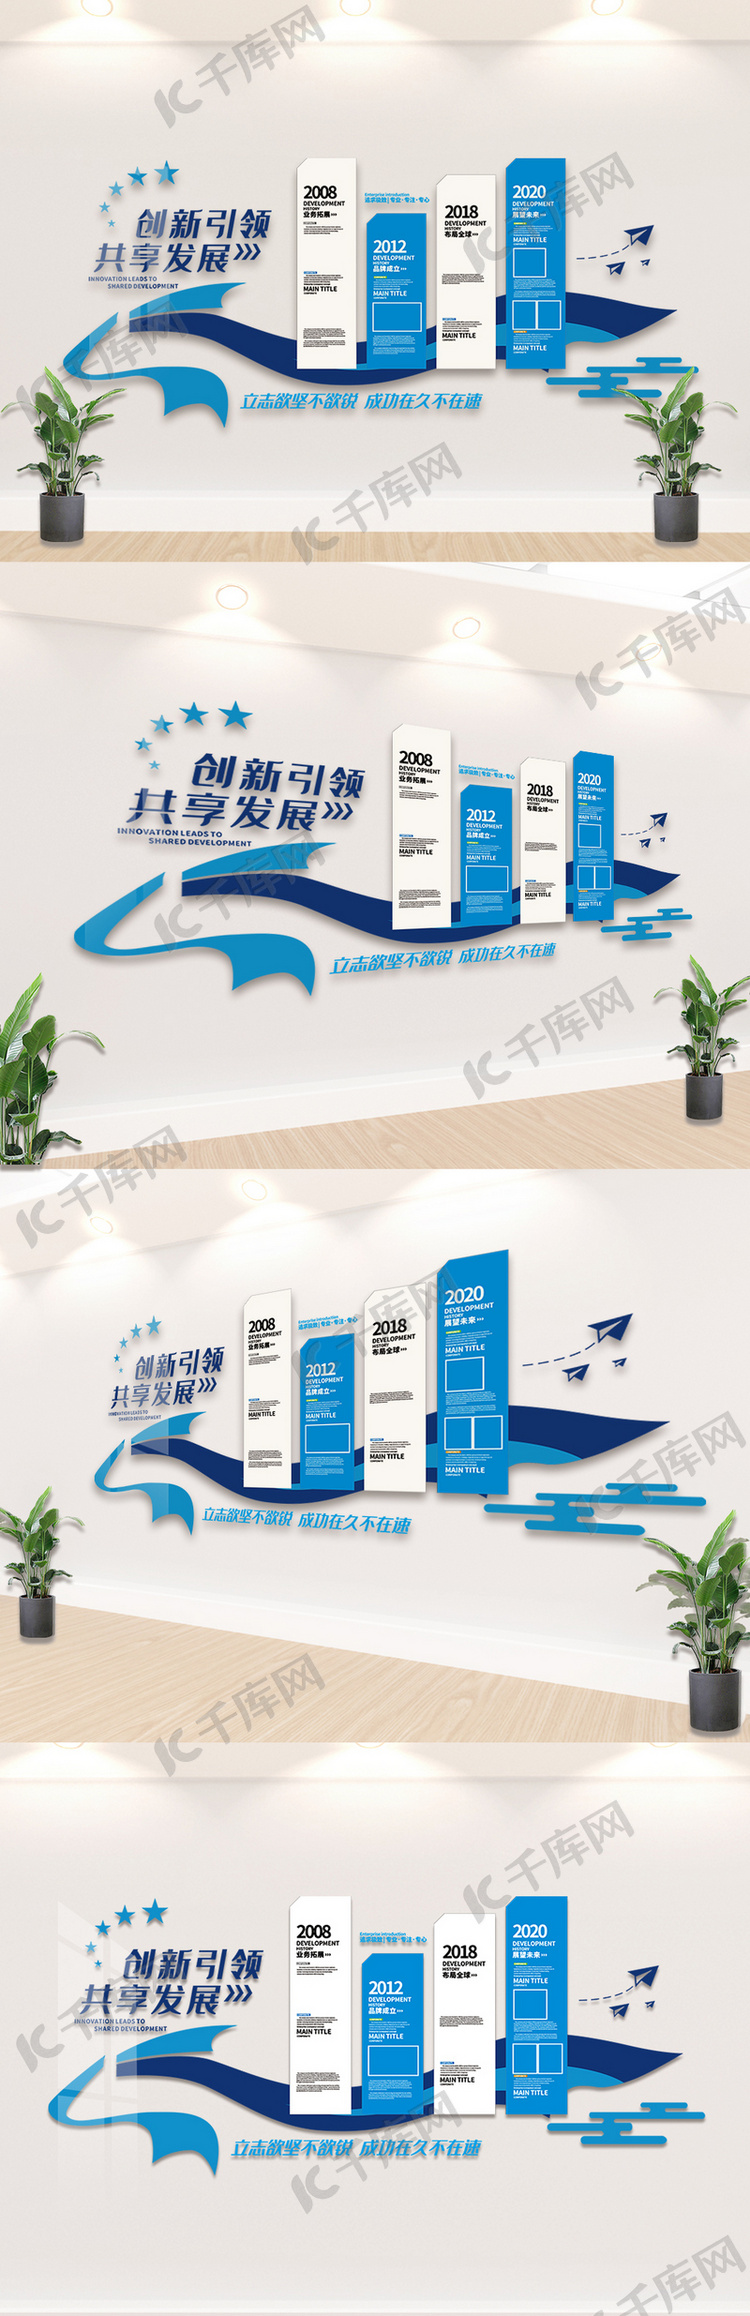 蓝色企业宣传文化墙设计模板素材